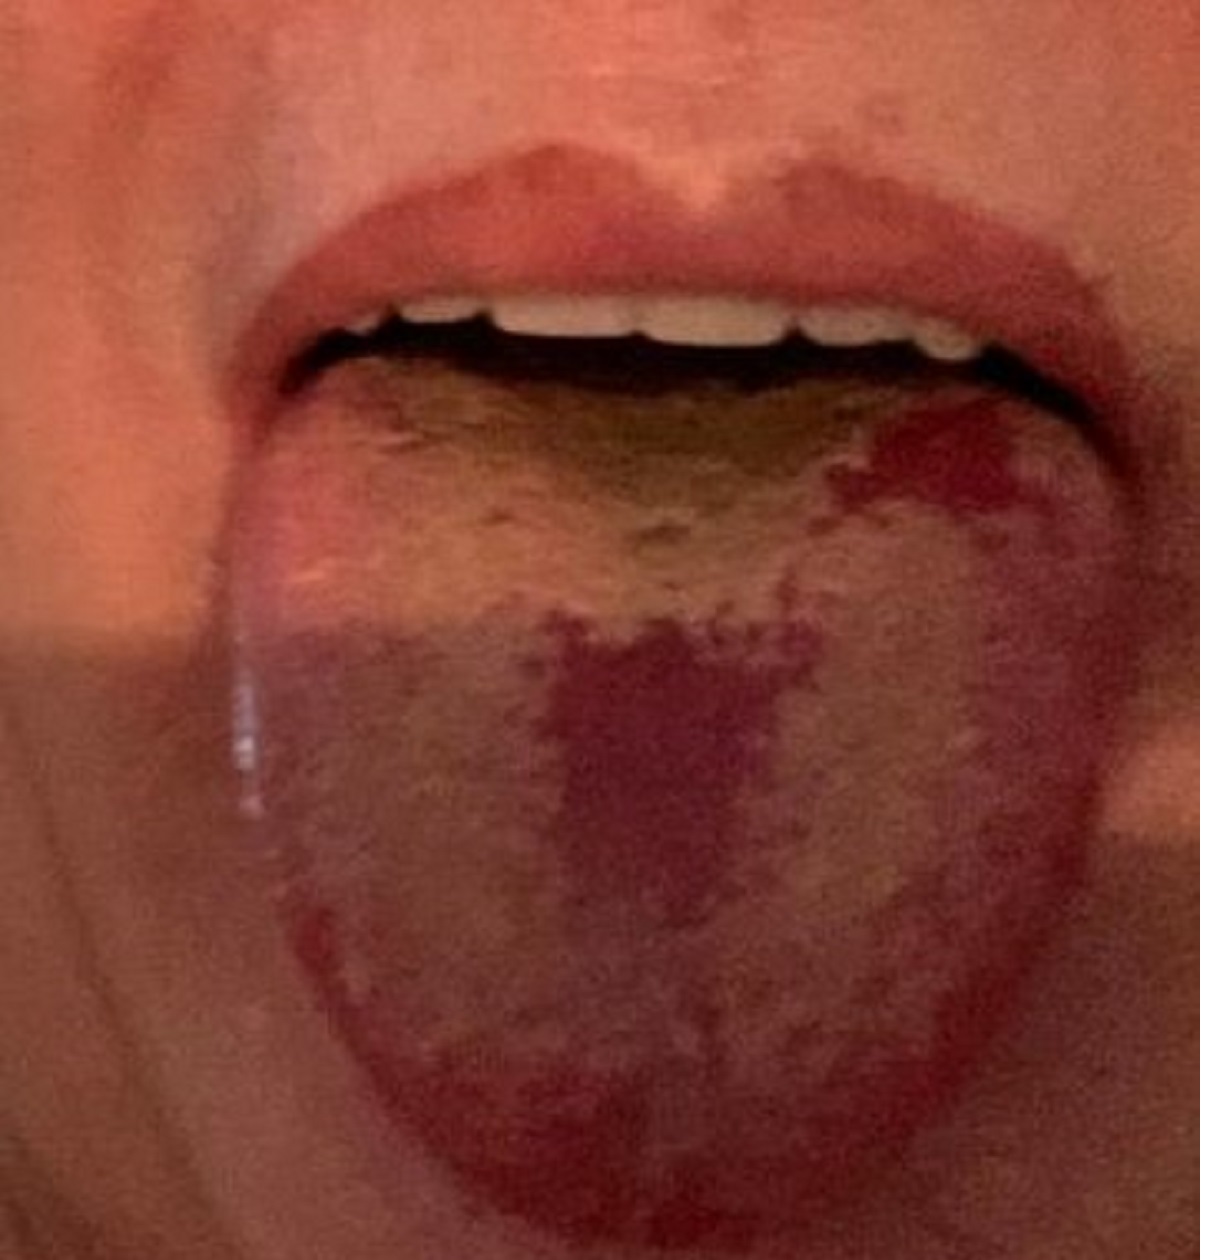 Un estudio revela que la 'lengua covid' es un síntoma del coronavirus